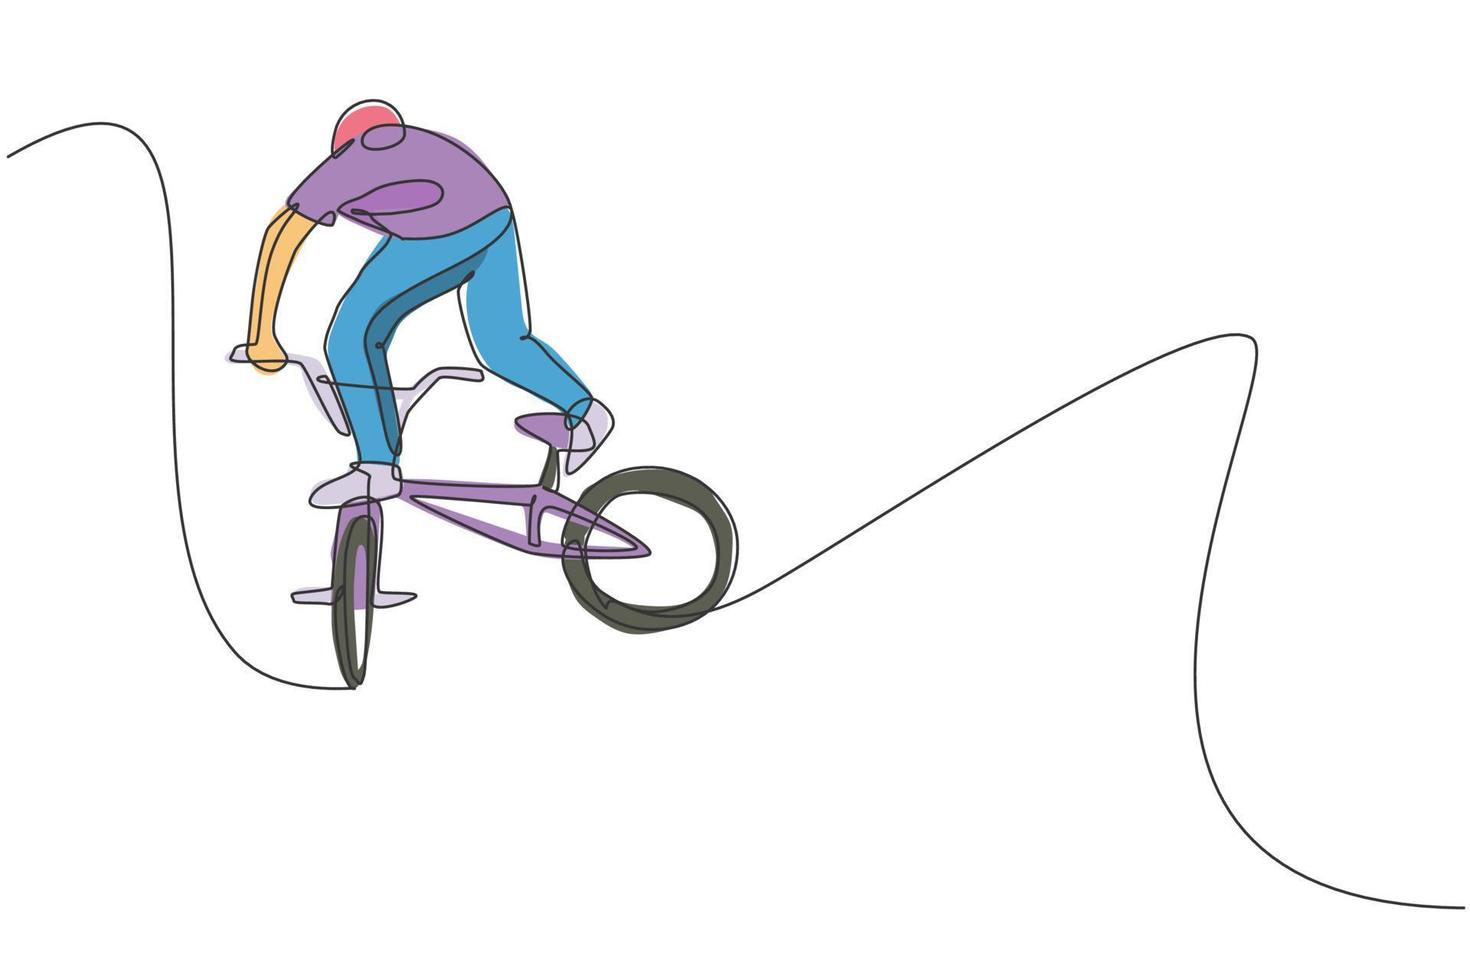 disegno a linea continua singola di un giovane ciclista bmx che vola in aria nello skatepark. concetto di stile libero bmx. illustrazione vettoriale di un disegno a linea per supporti artistici di promozione freestyle